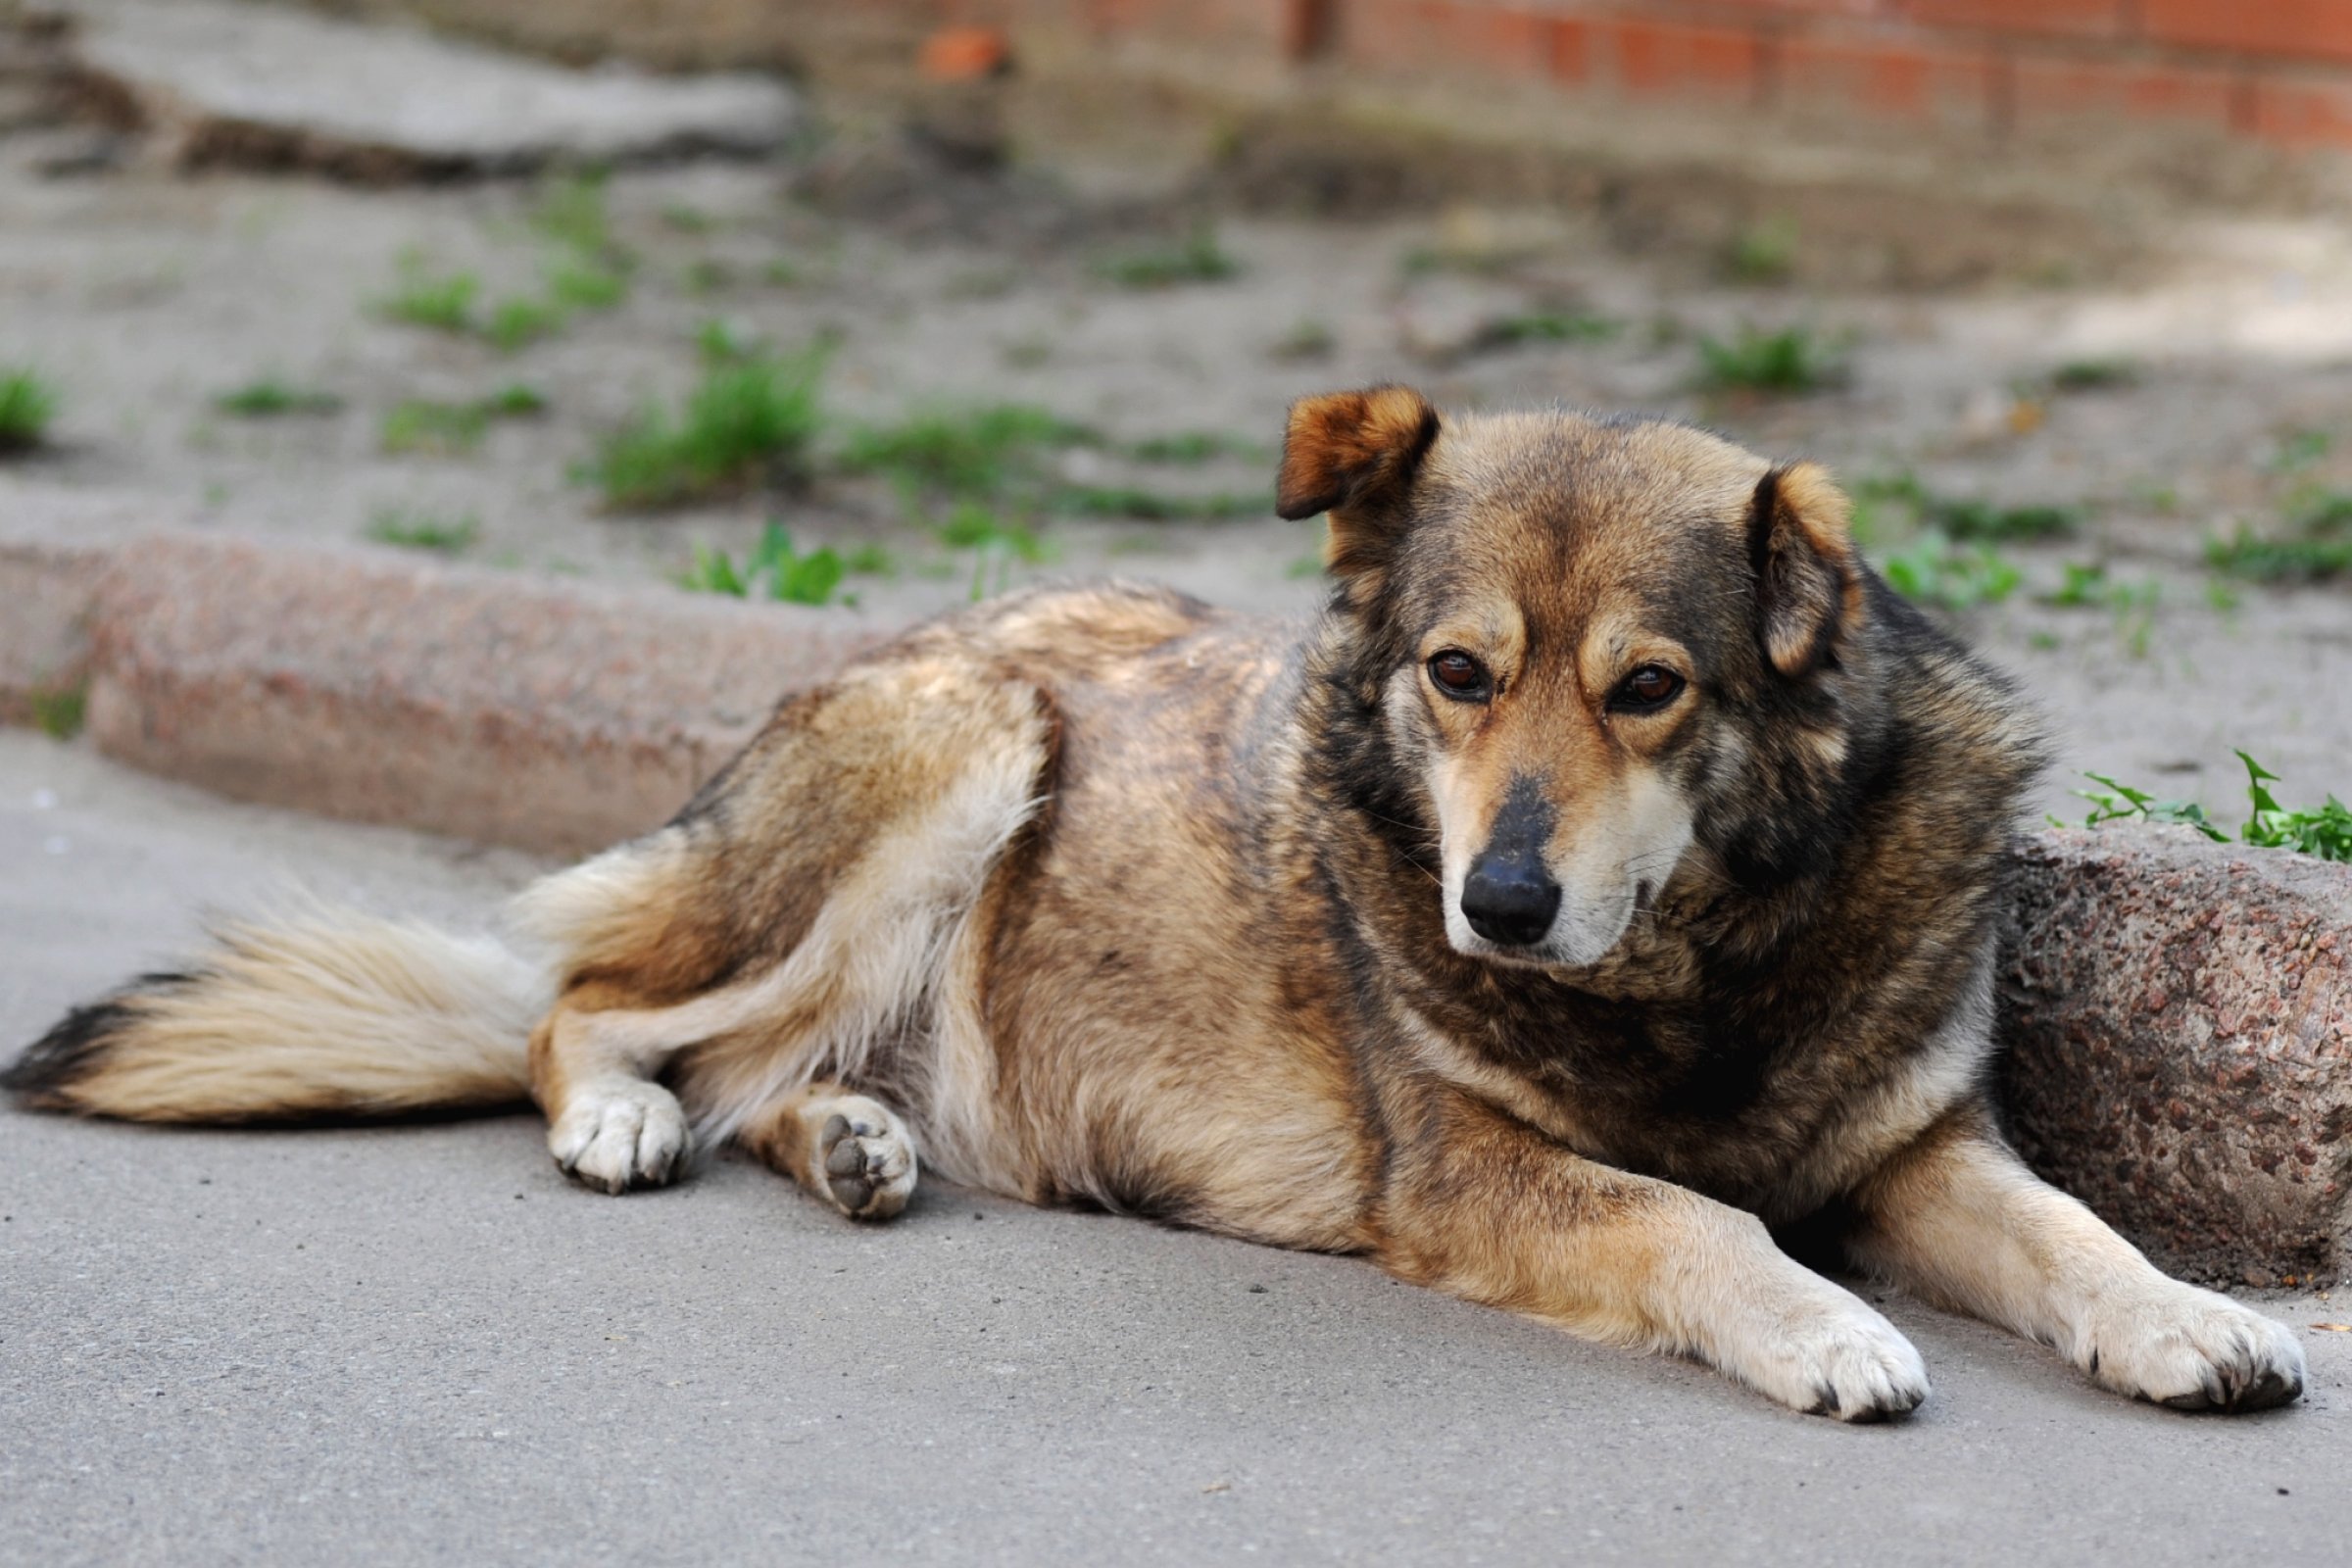 Leptospirose kan forekomme spesielt hos importerte hunder. Foto:Colourbox